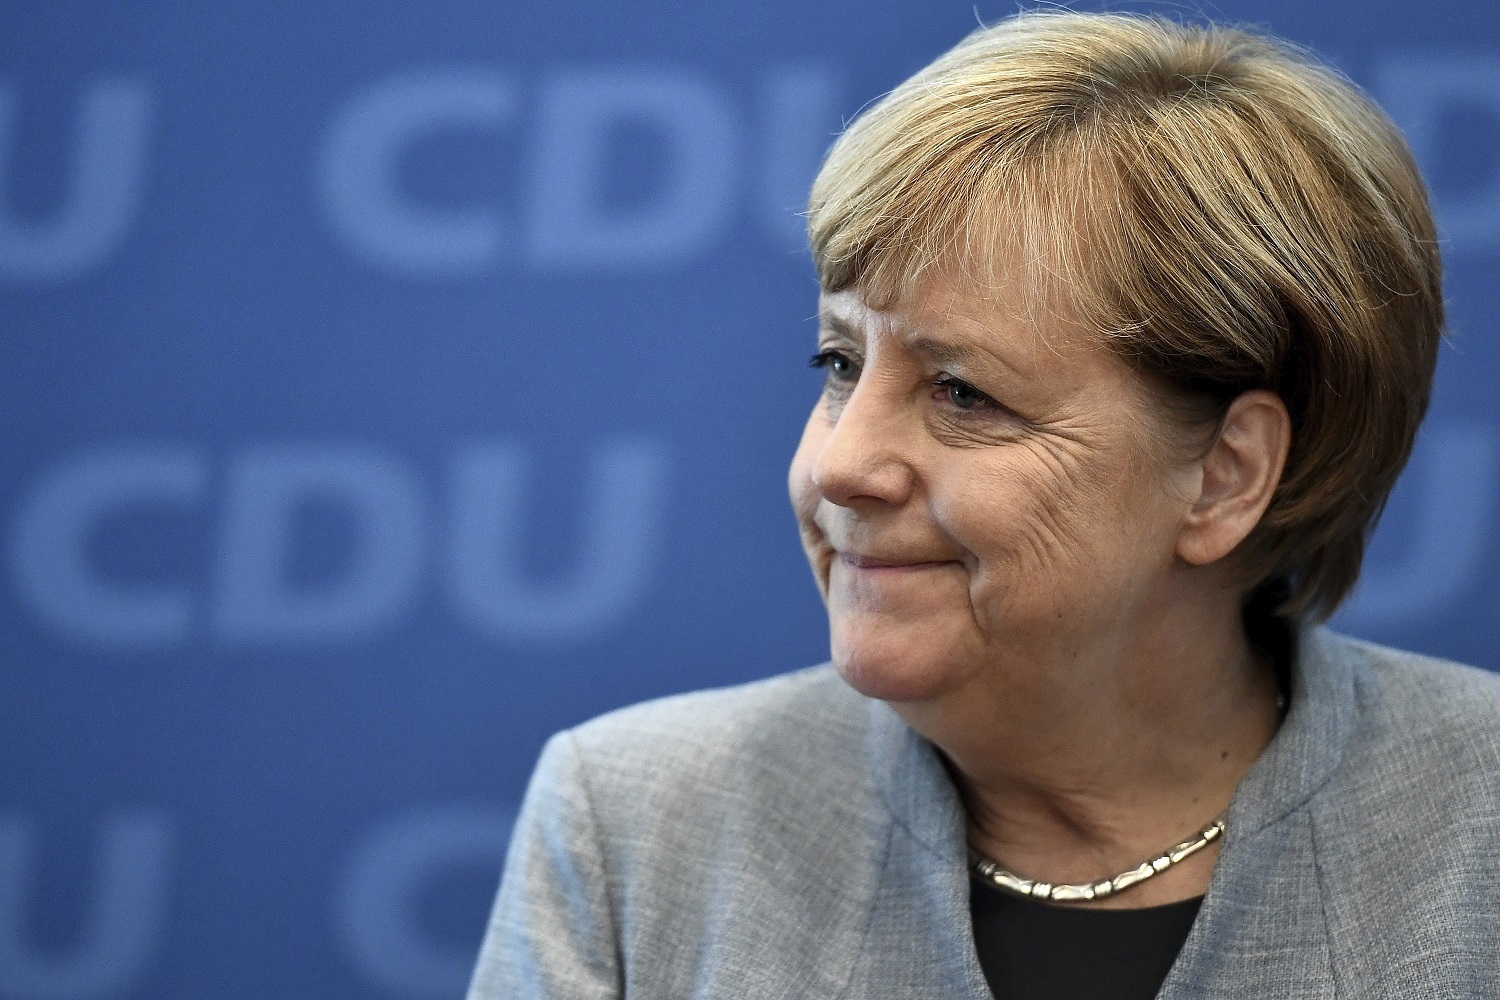 Afiliados del Partido Socialdemócrata de Alemania aprueban coalición con Merkel